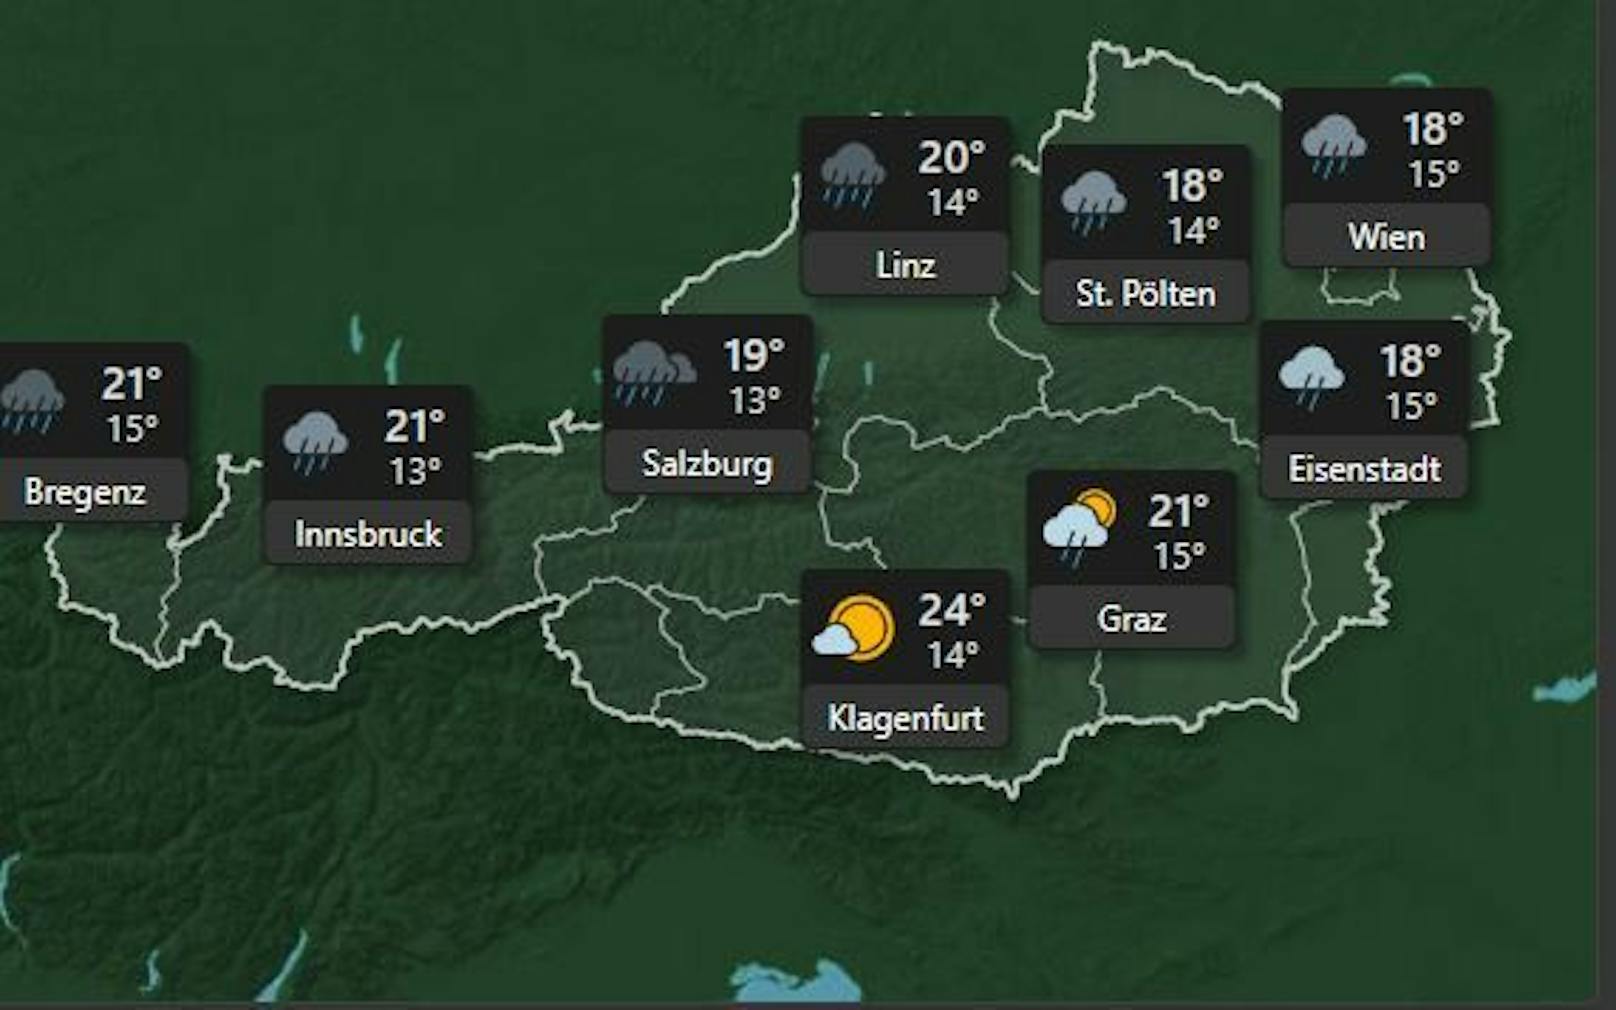 <strong>Samstag, 9. Juli:&nbsp;</strong> Am Samstag ist mit Regenschauern zu rechnen in ganz Österreich bei Temperaturen um die 19 Grad. In Wien fällt die Temperatur in der Nacht auf <strong>15 Grad.</strong>